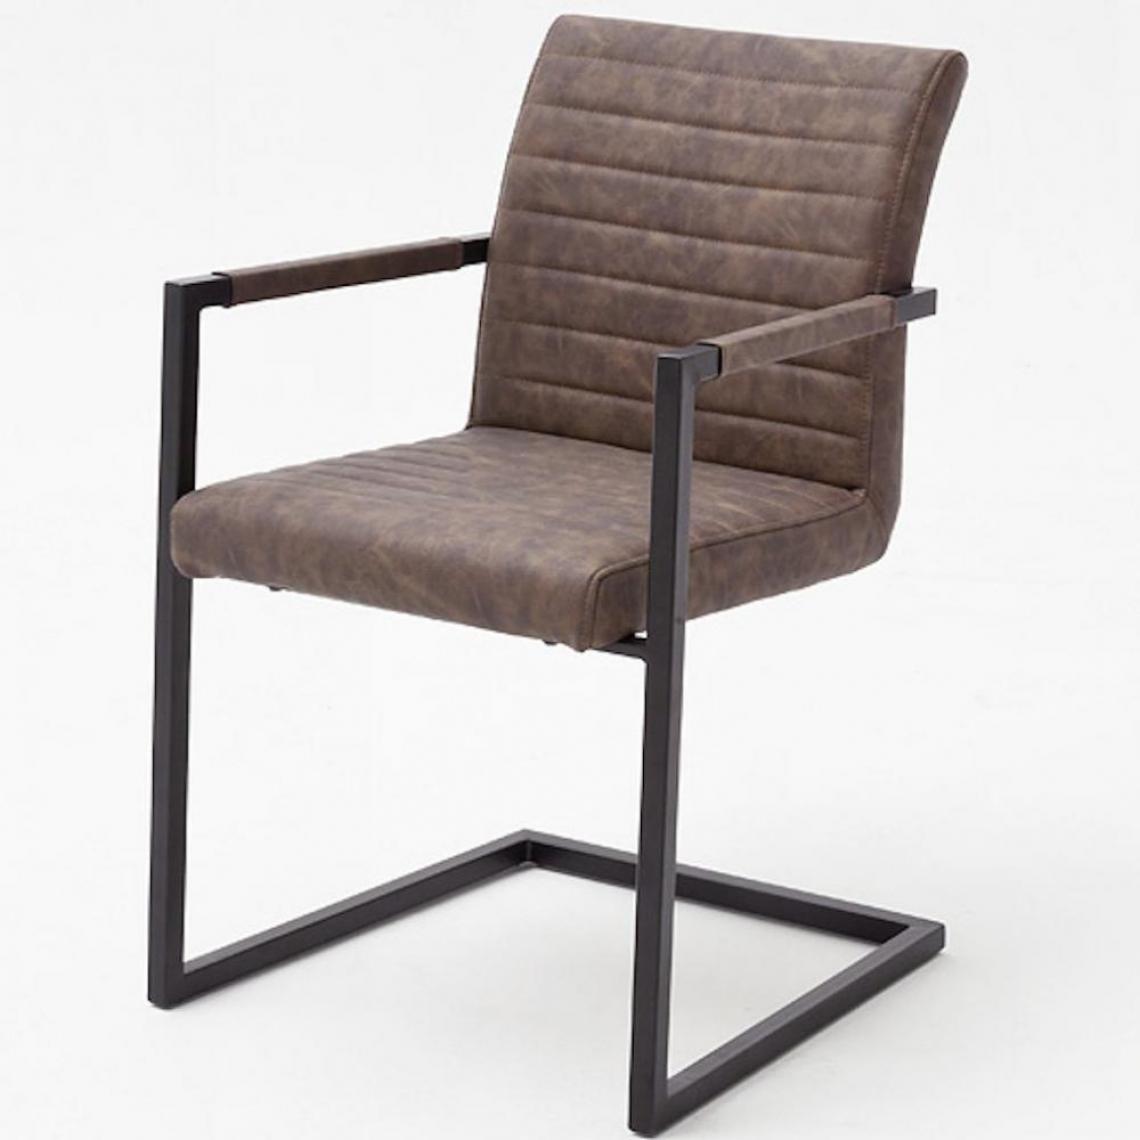 Inside 75 - Lot de 4 chaises KERRY tissu marron couture horizontale avec piètement tube carré métal noir mat avec accoudoirs - Chaises